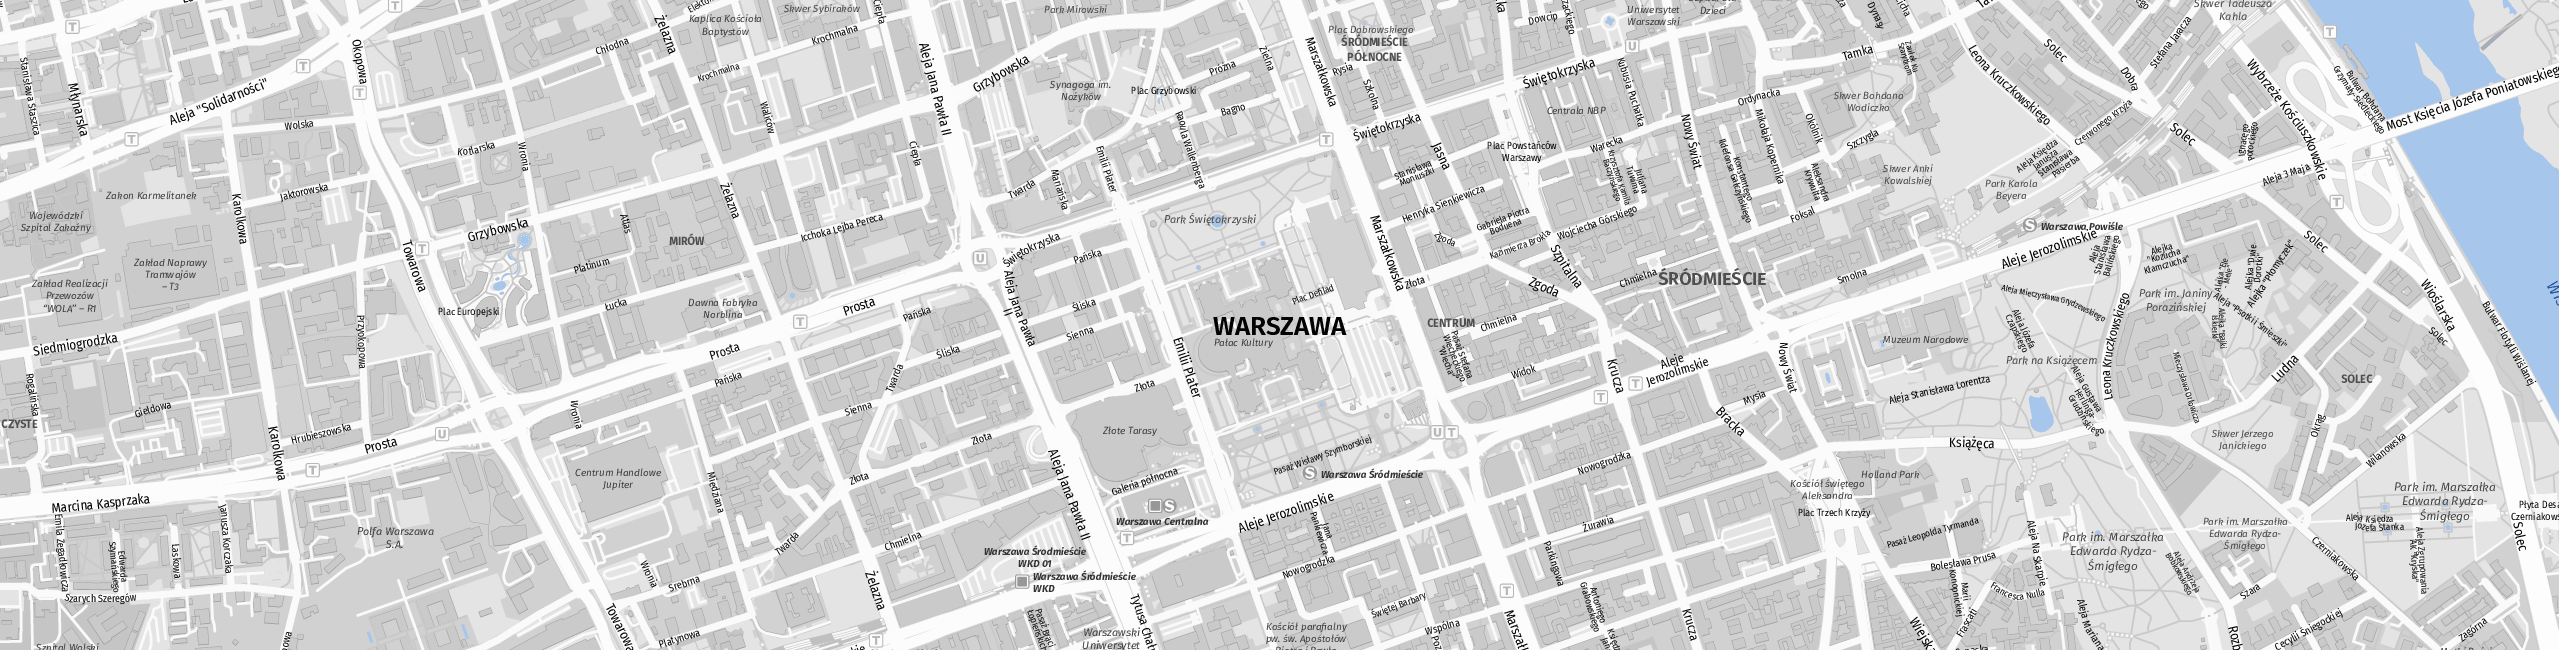 Stadtplan Warschau zum Downloaden.